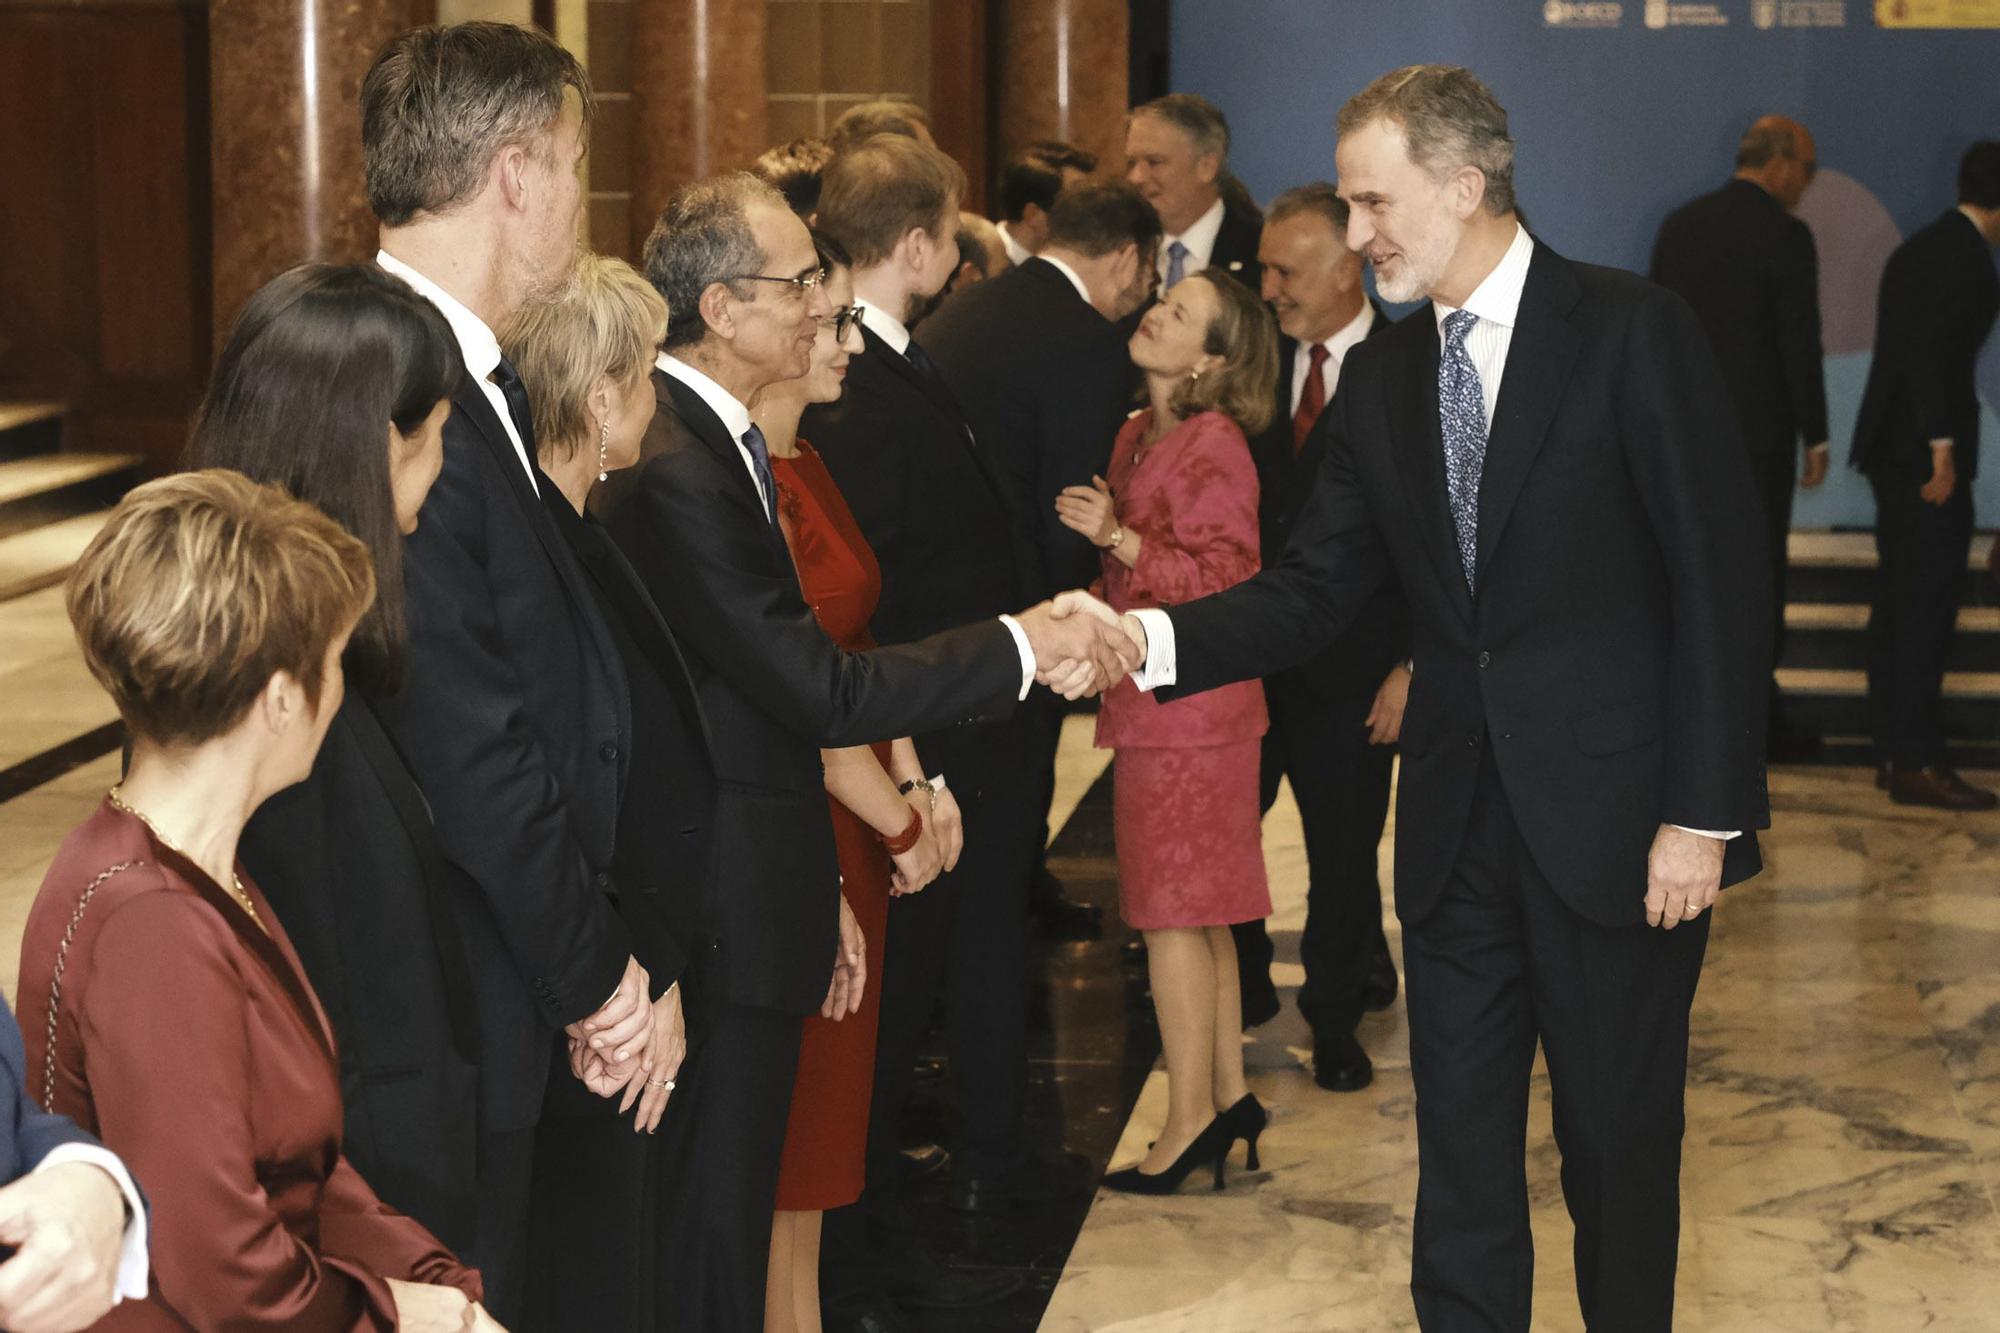 Felipe VI inaugura la Conferencia Ministerial sobre Economía Digital de la OCDE